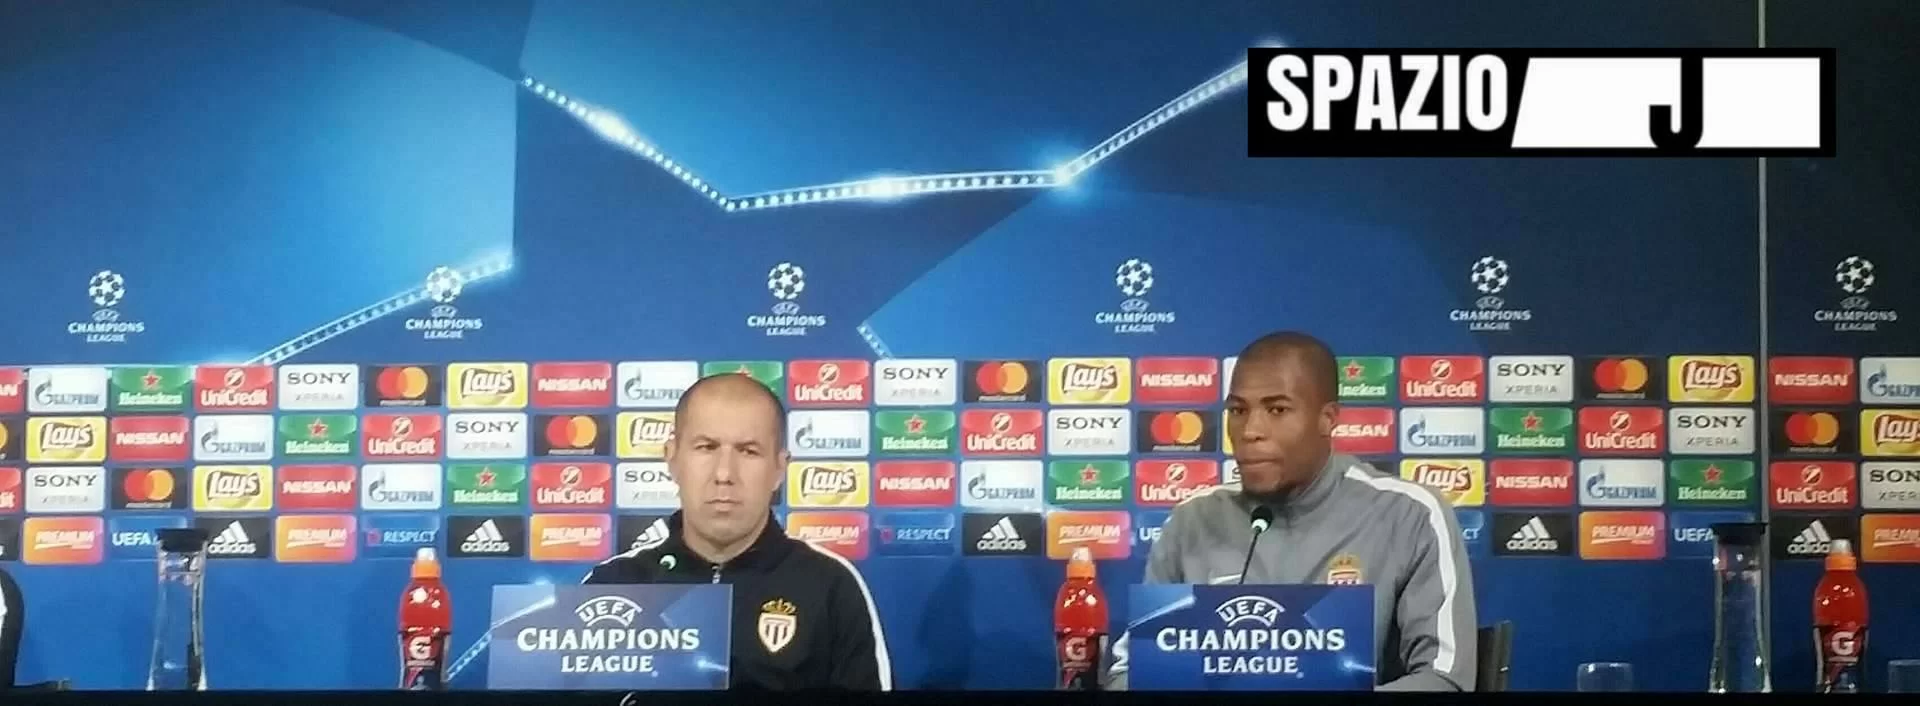 RELIVE Conferenza stampa Monaco, Sidibè: “Ci crediamo!”, Jardim: “Domani cambieremo molto”